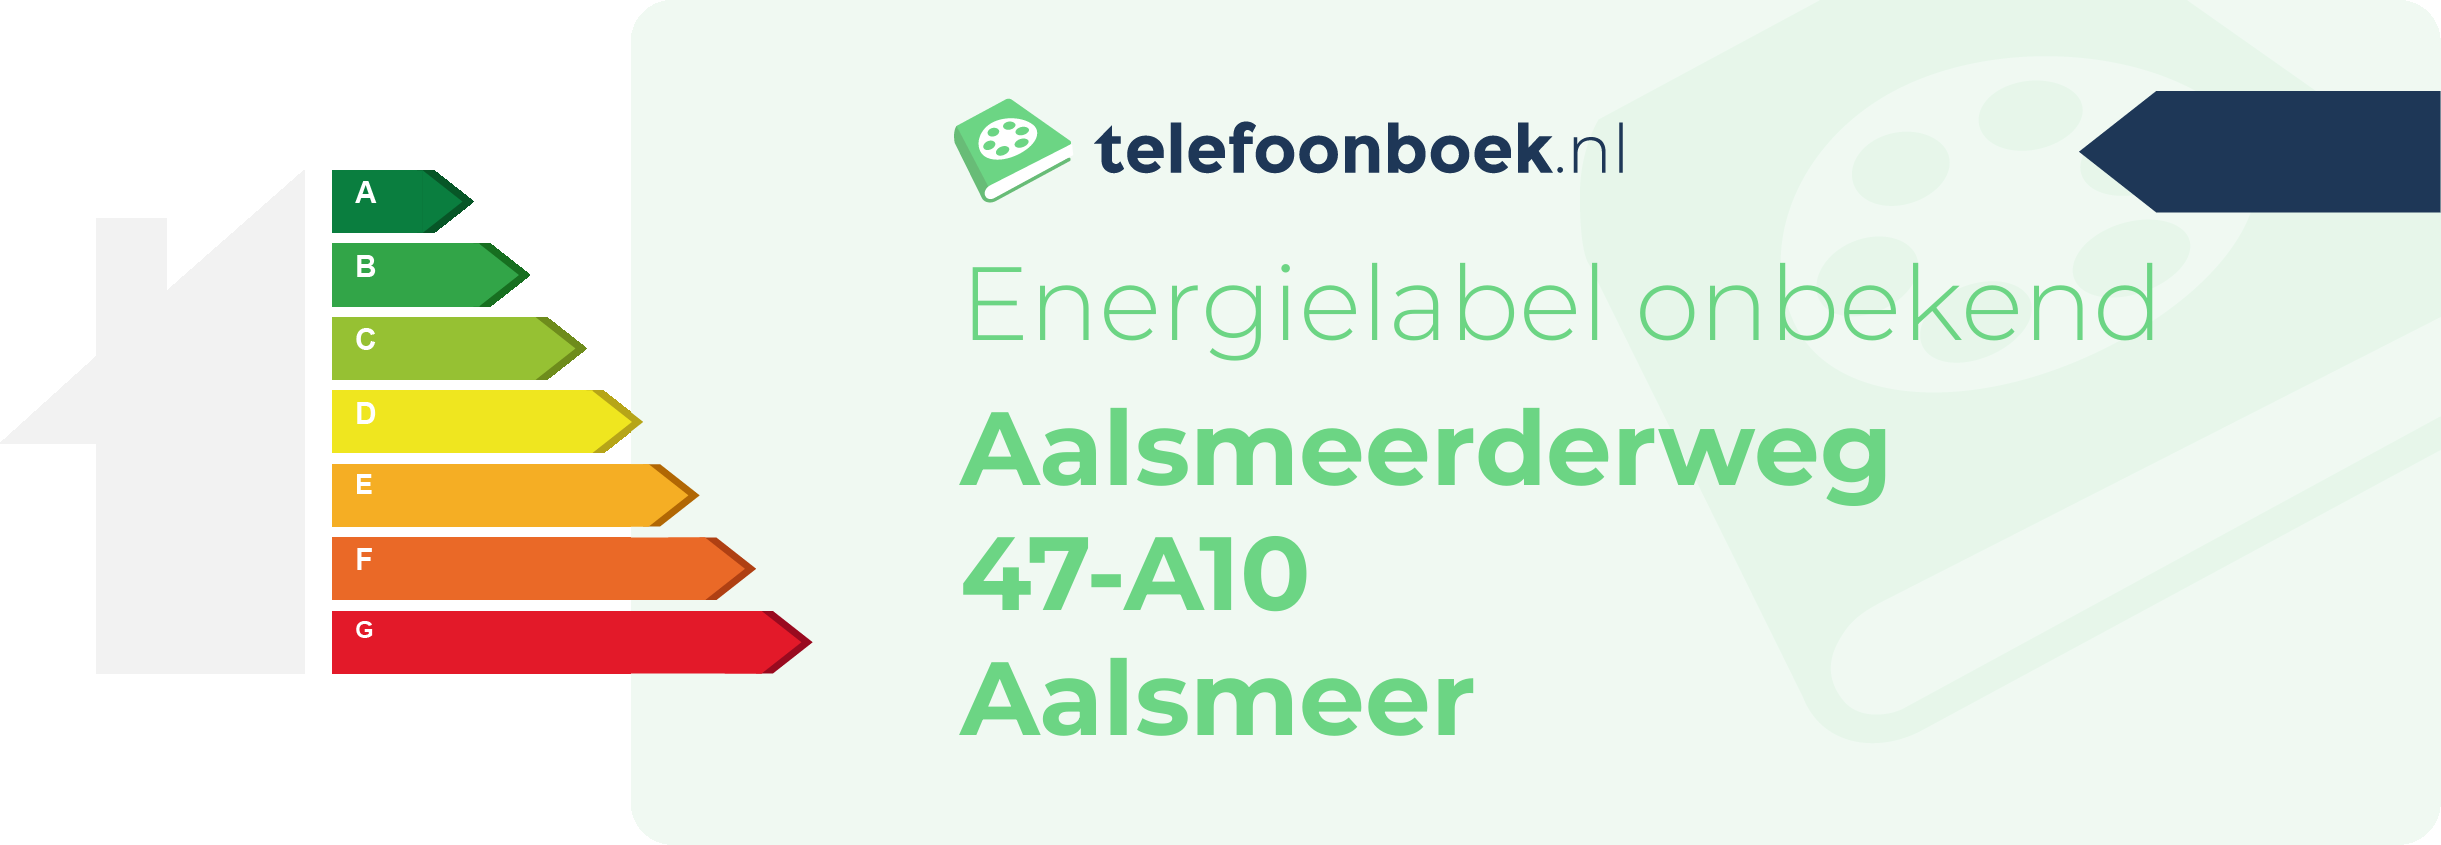 Energielabel Aalsmeerderweg 47-A10 Aalsmeer